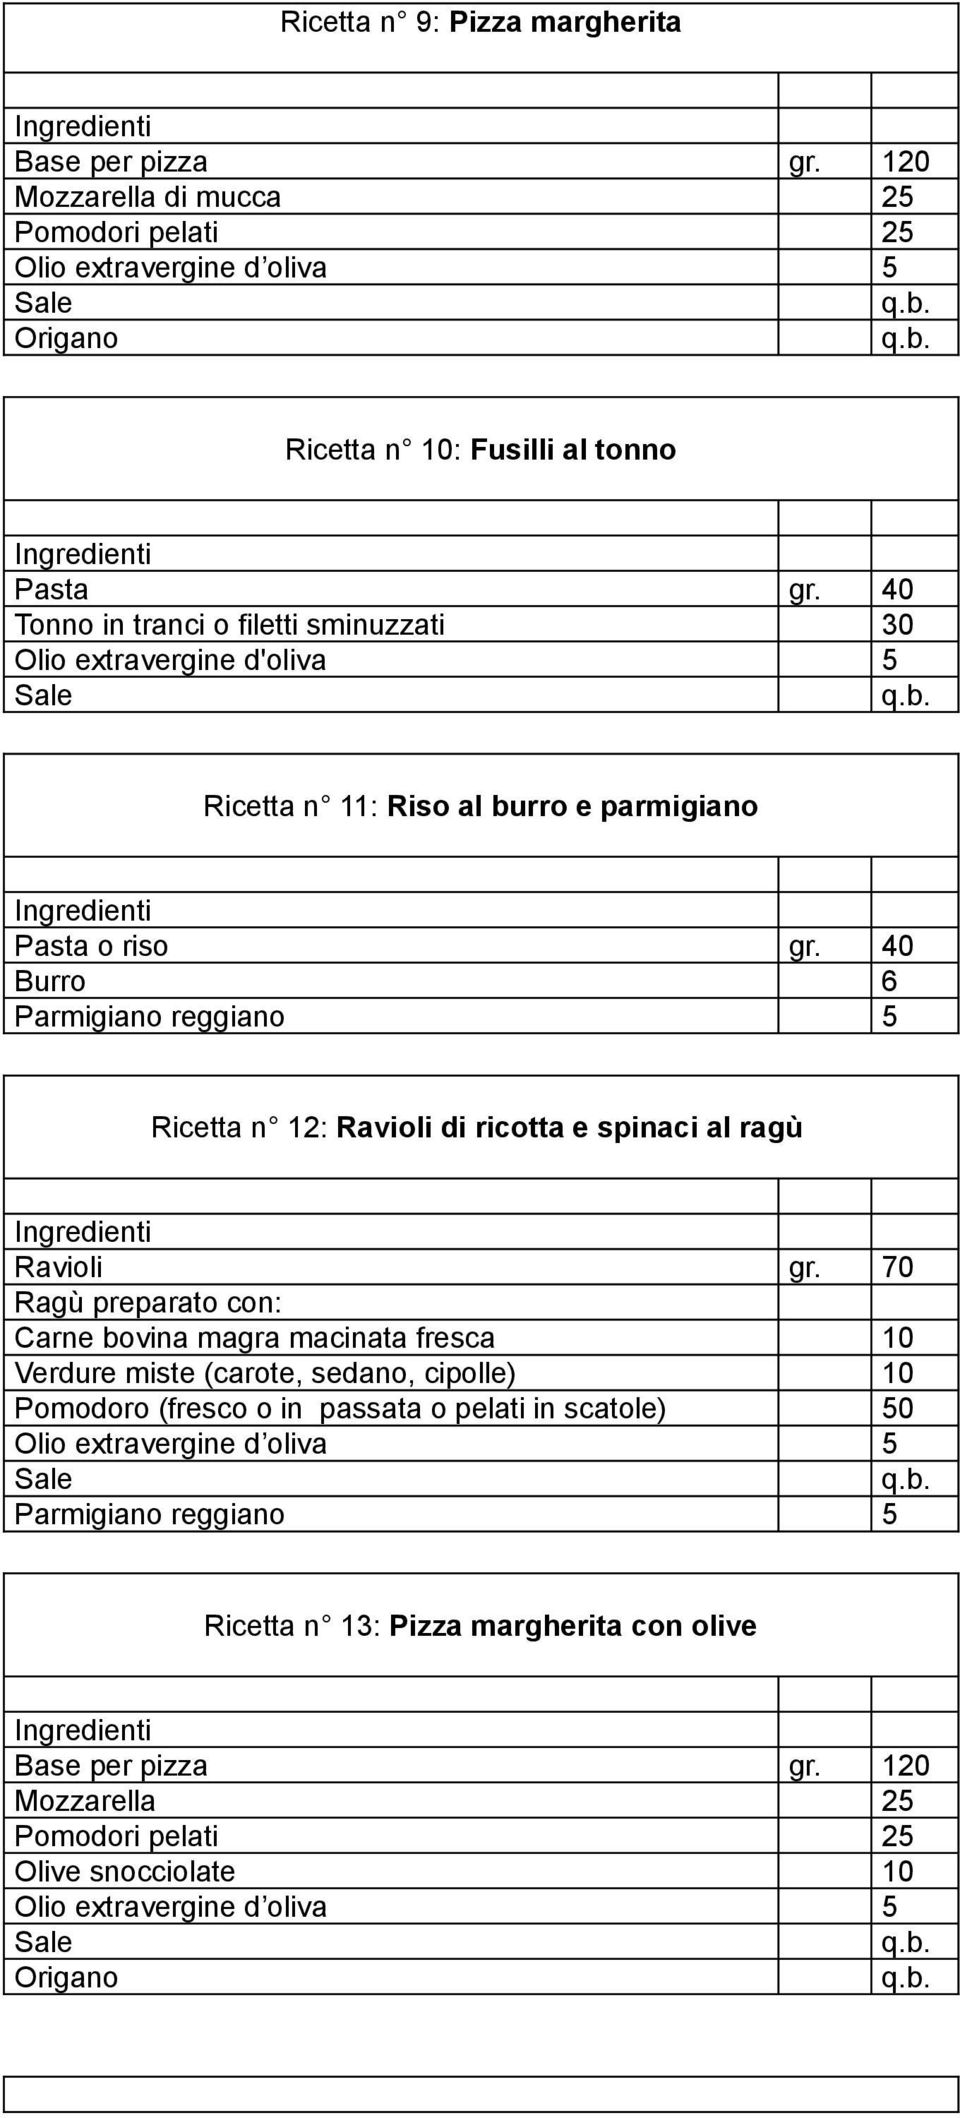 40 Burro 6 Parmigiano reggiano 5 Ricetta n 12: Ravioli di ricotta e spinaci al ragù Ravioli gr.